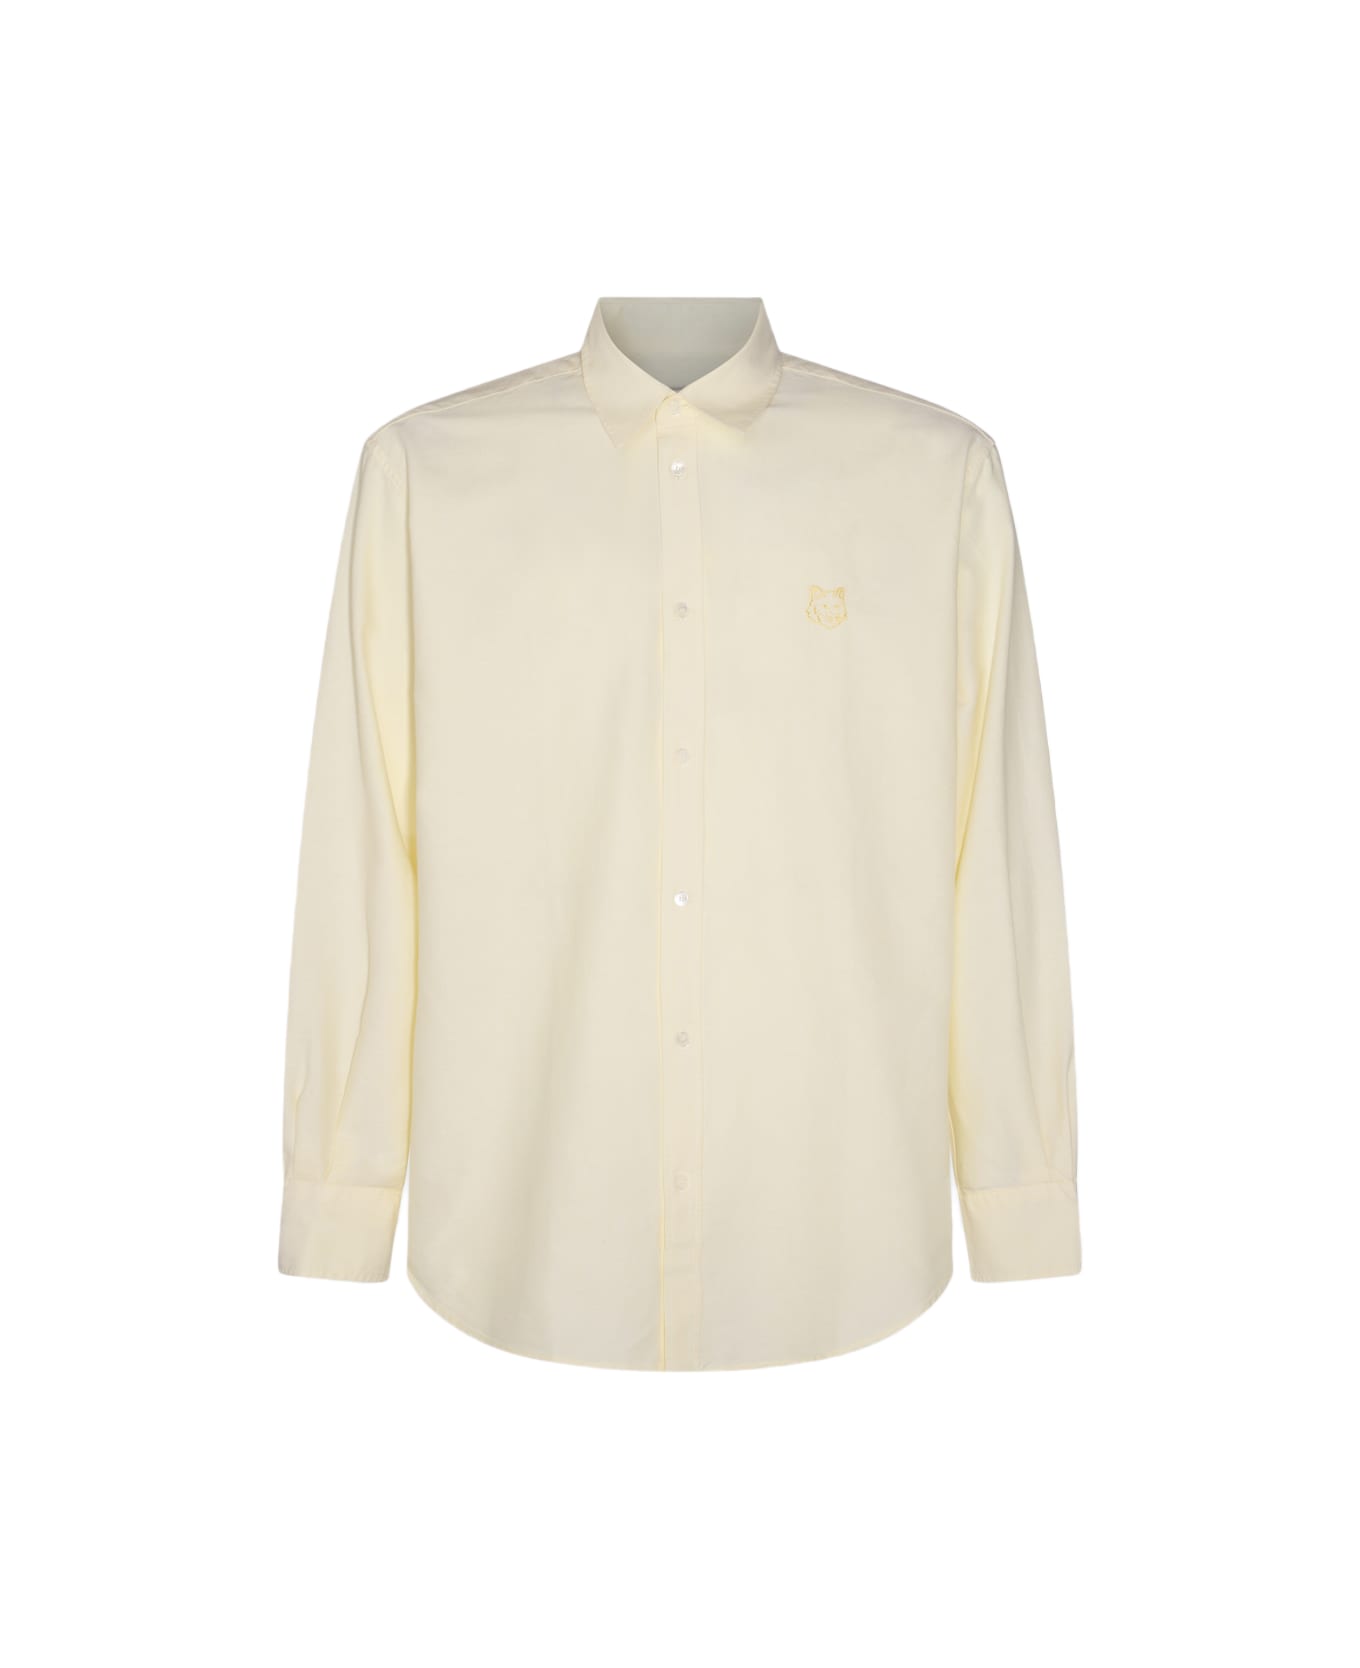 Maison Kitsuné Dark White Cotton Shirt - CHAMOMILLE